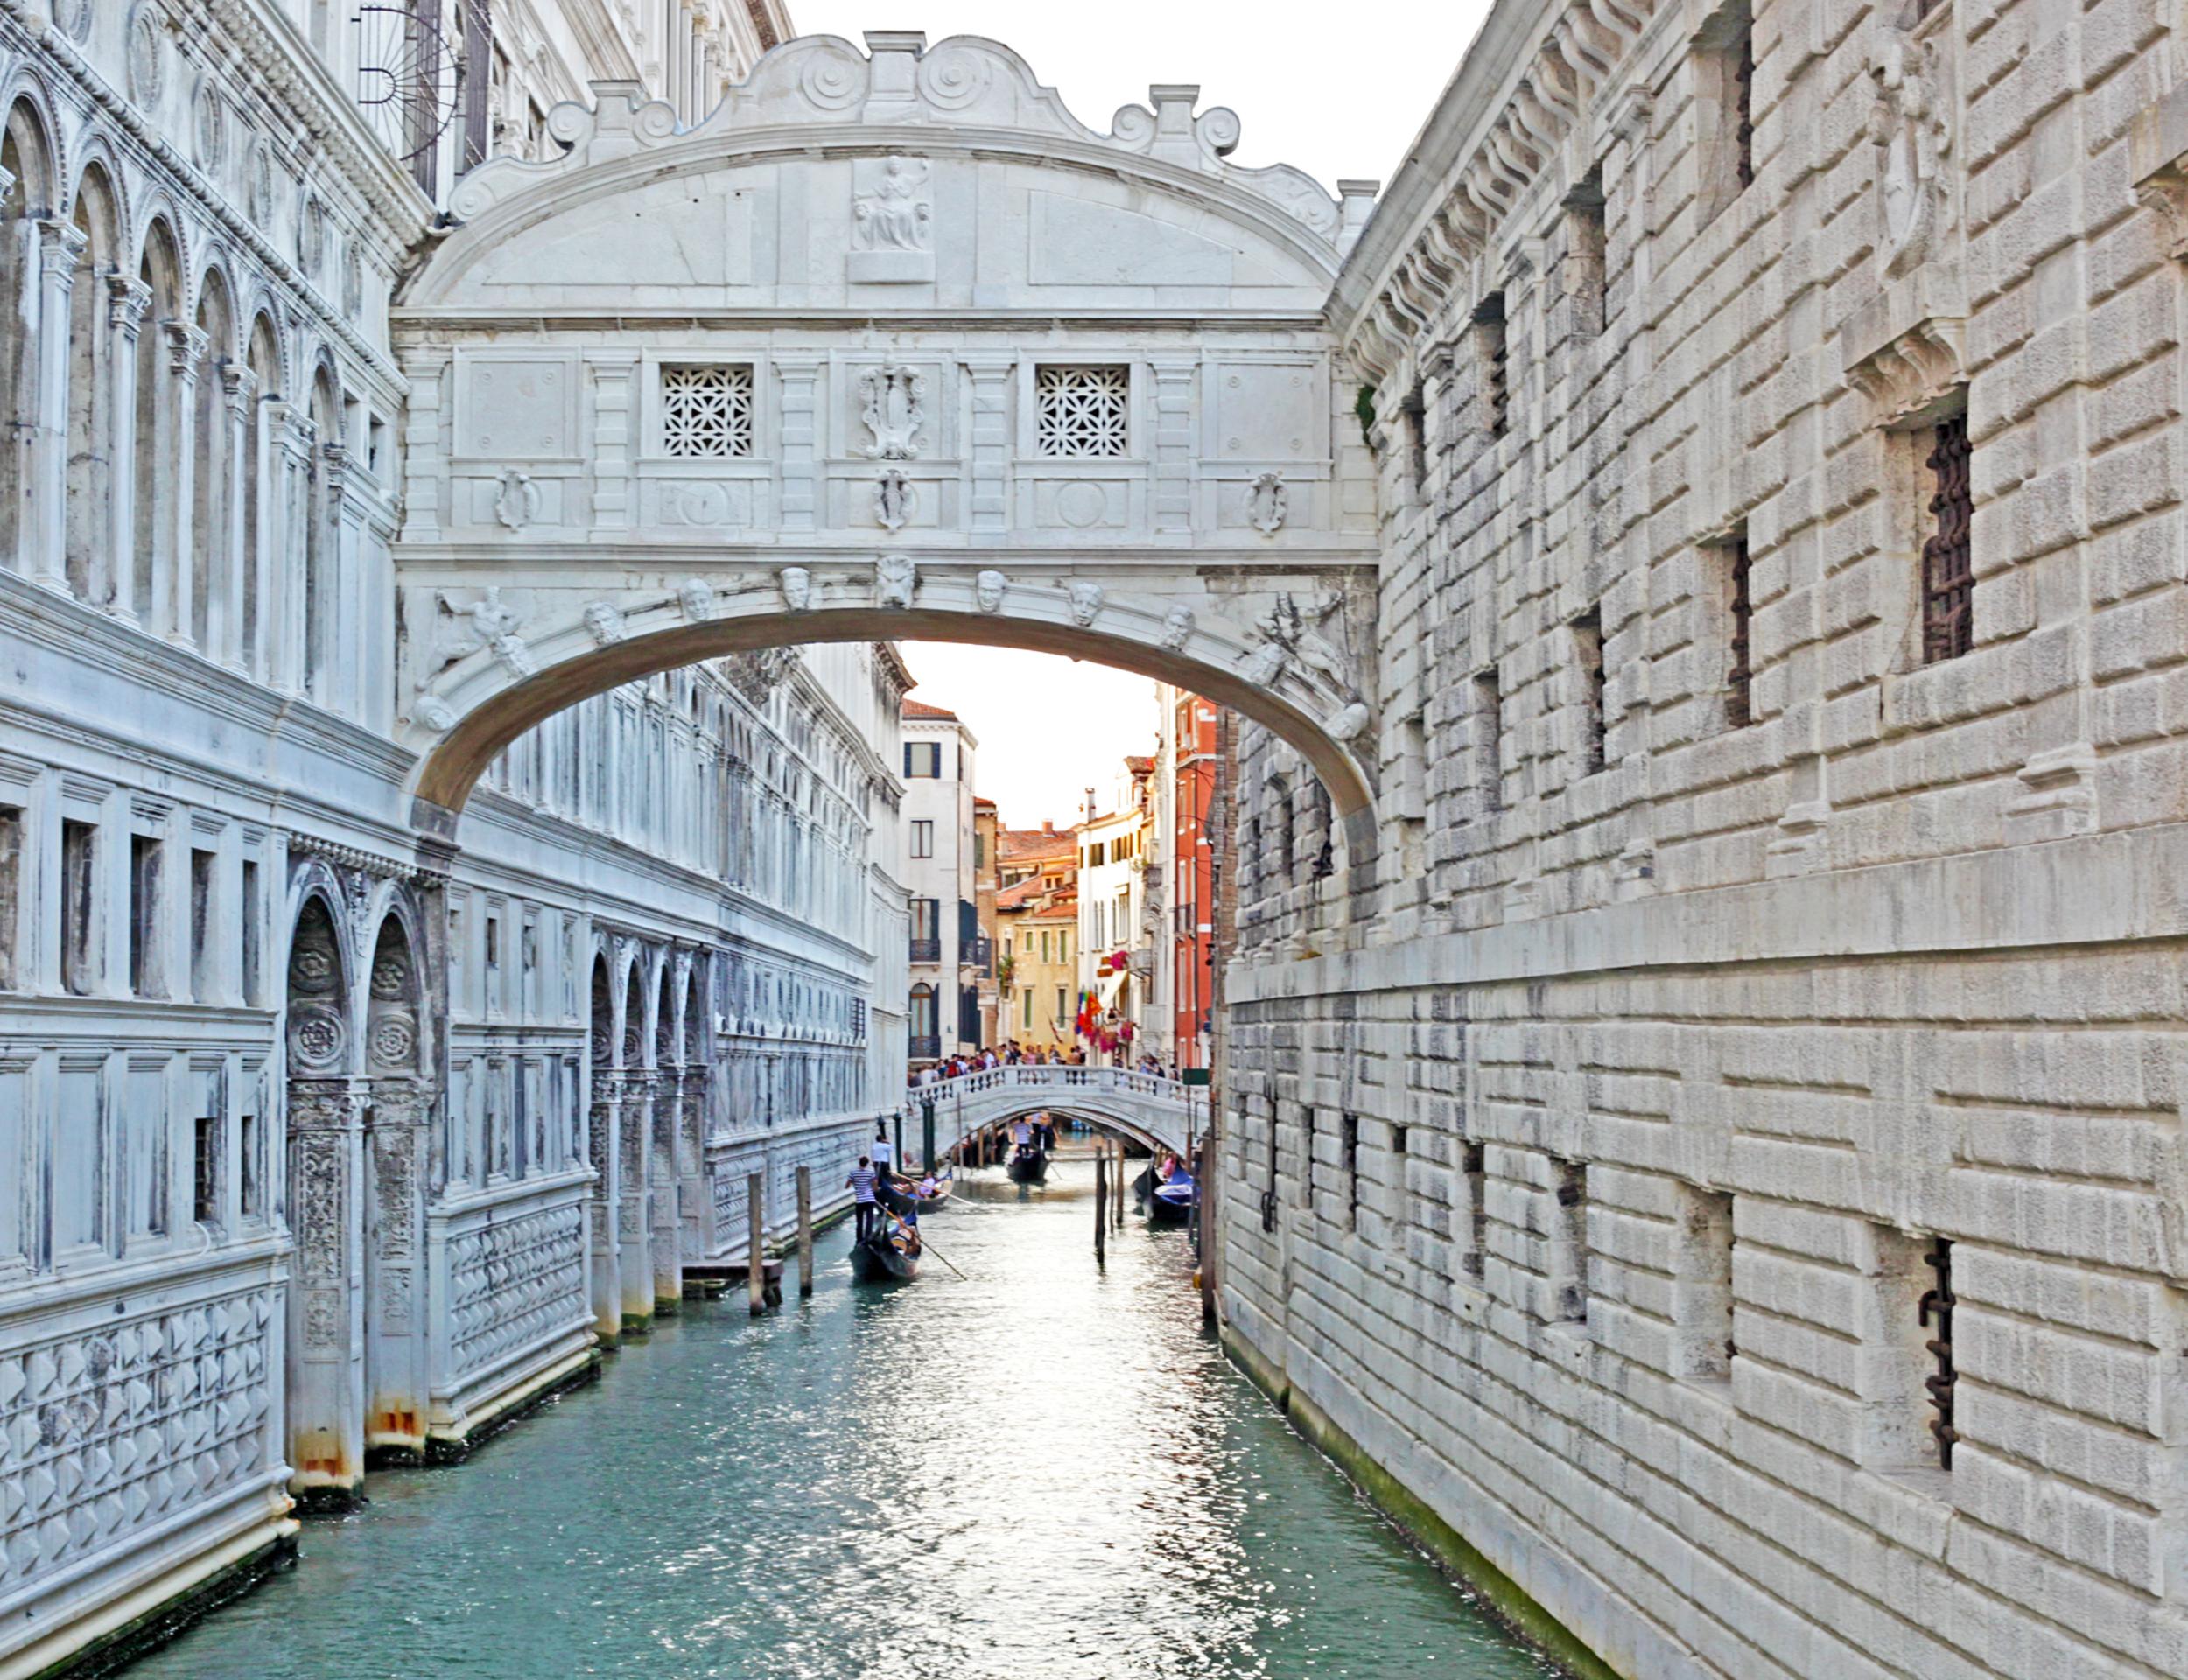 Пешая экскурсия по Венеции с гидом, вход без очереди в собор Святого Марка и прогулка на гондоле